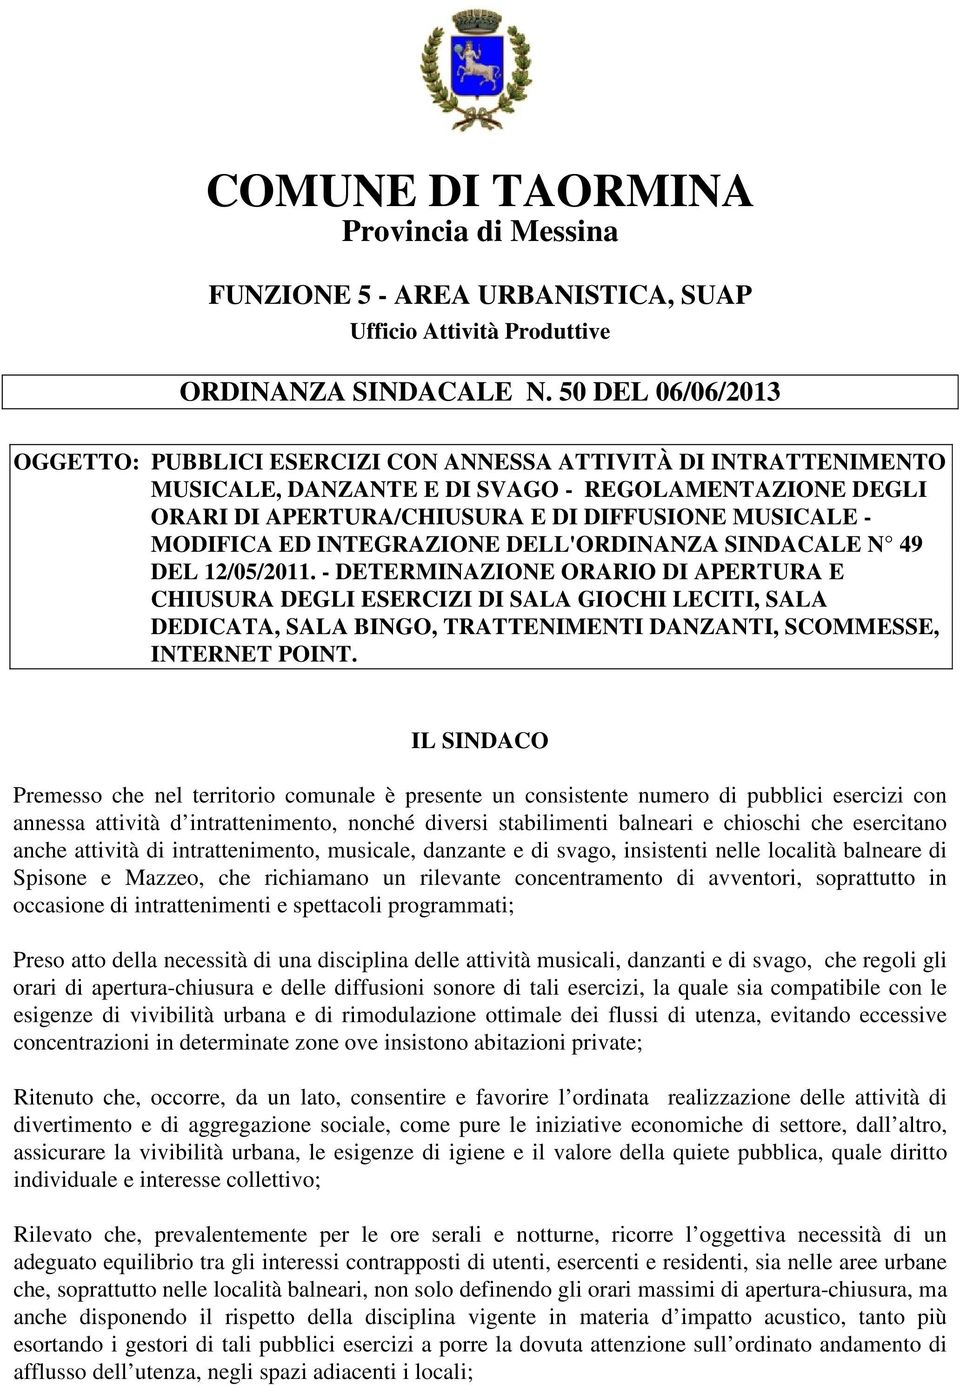 MODIFICA ED INTEGRAZIONE DELL'ORDINANZA SINDACALE N 49 DEL 12/05/2011.